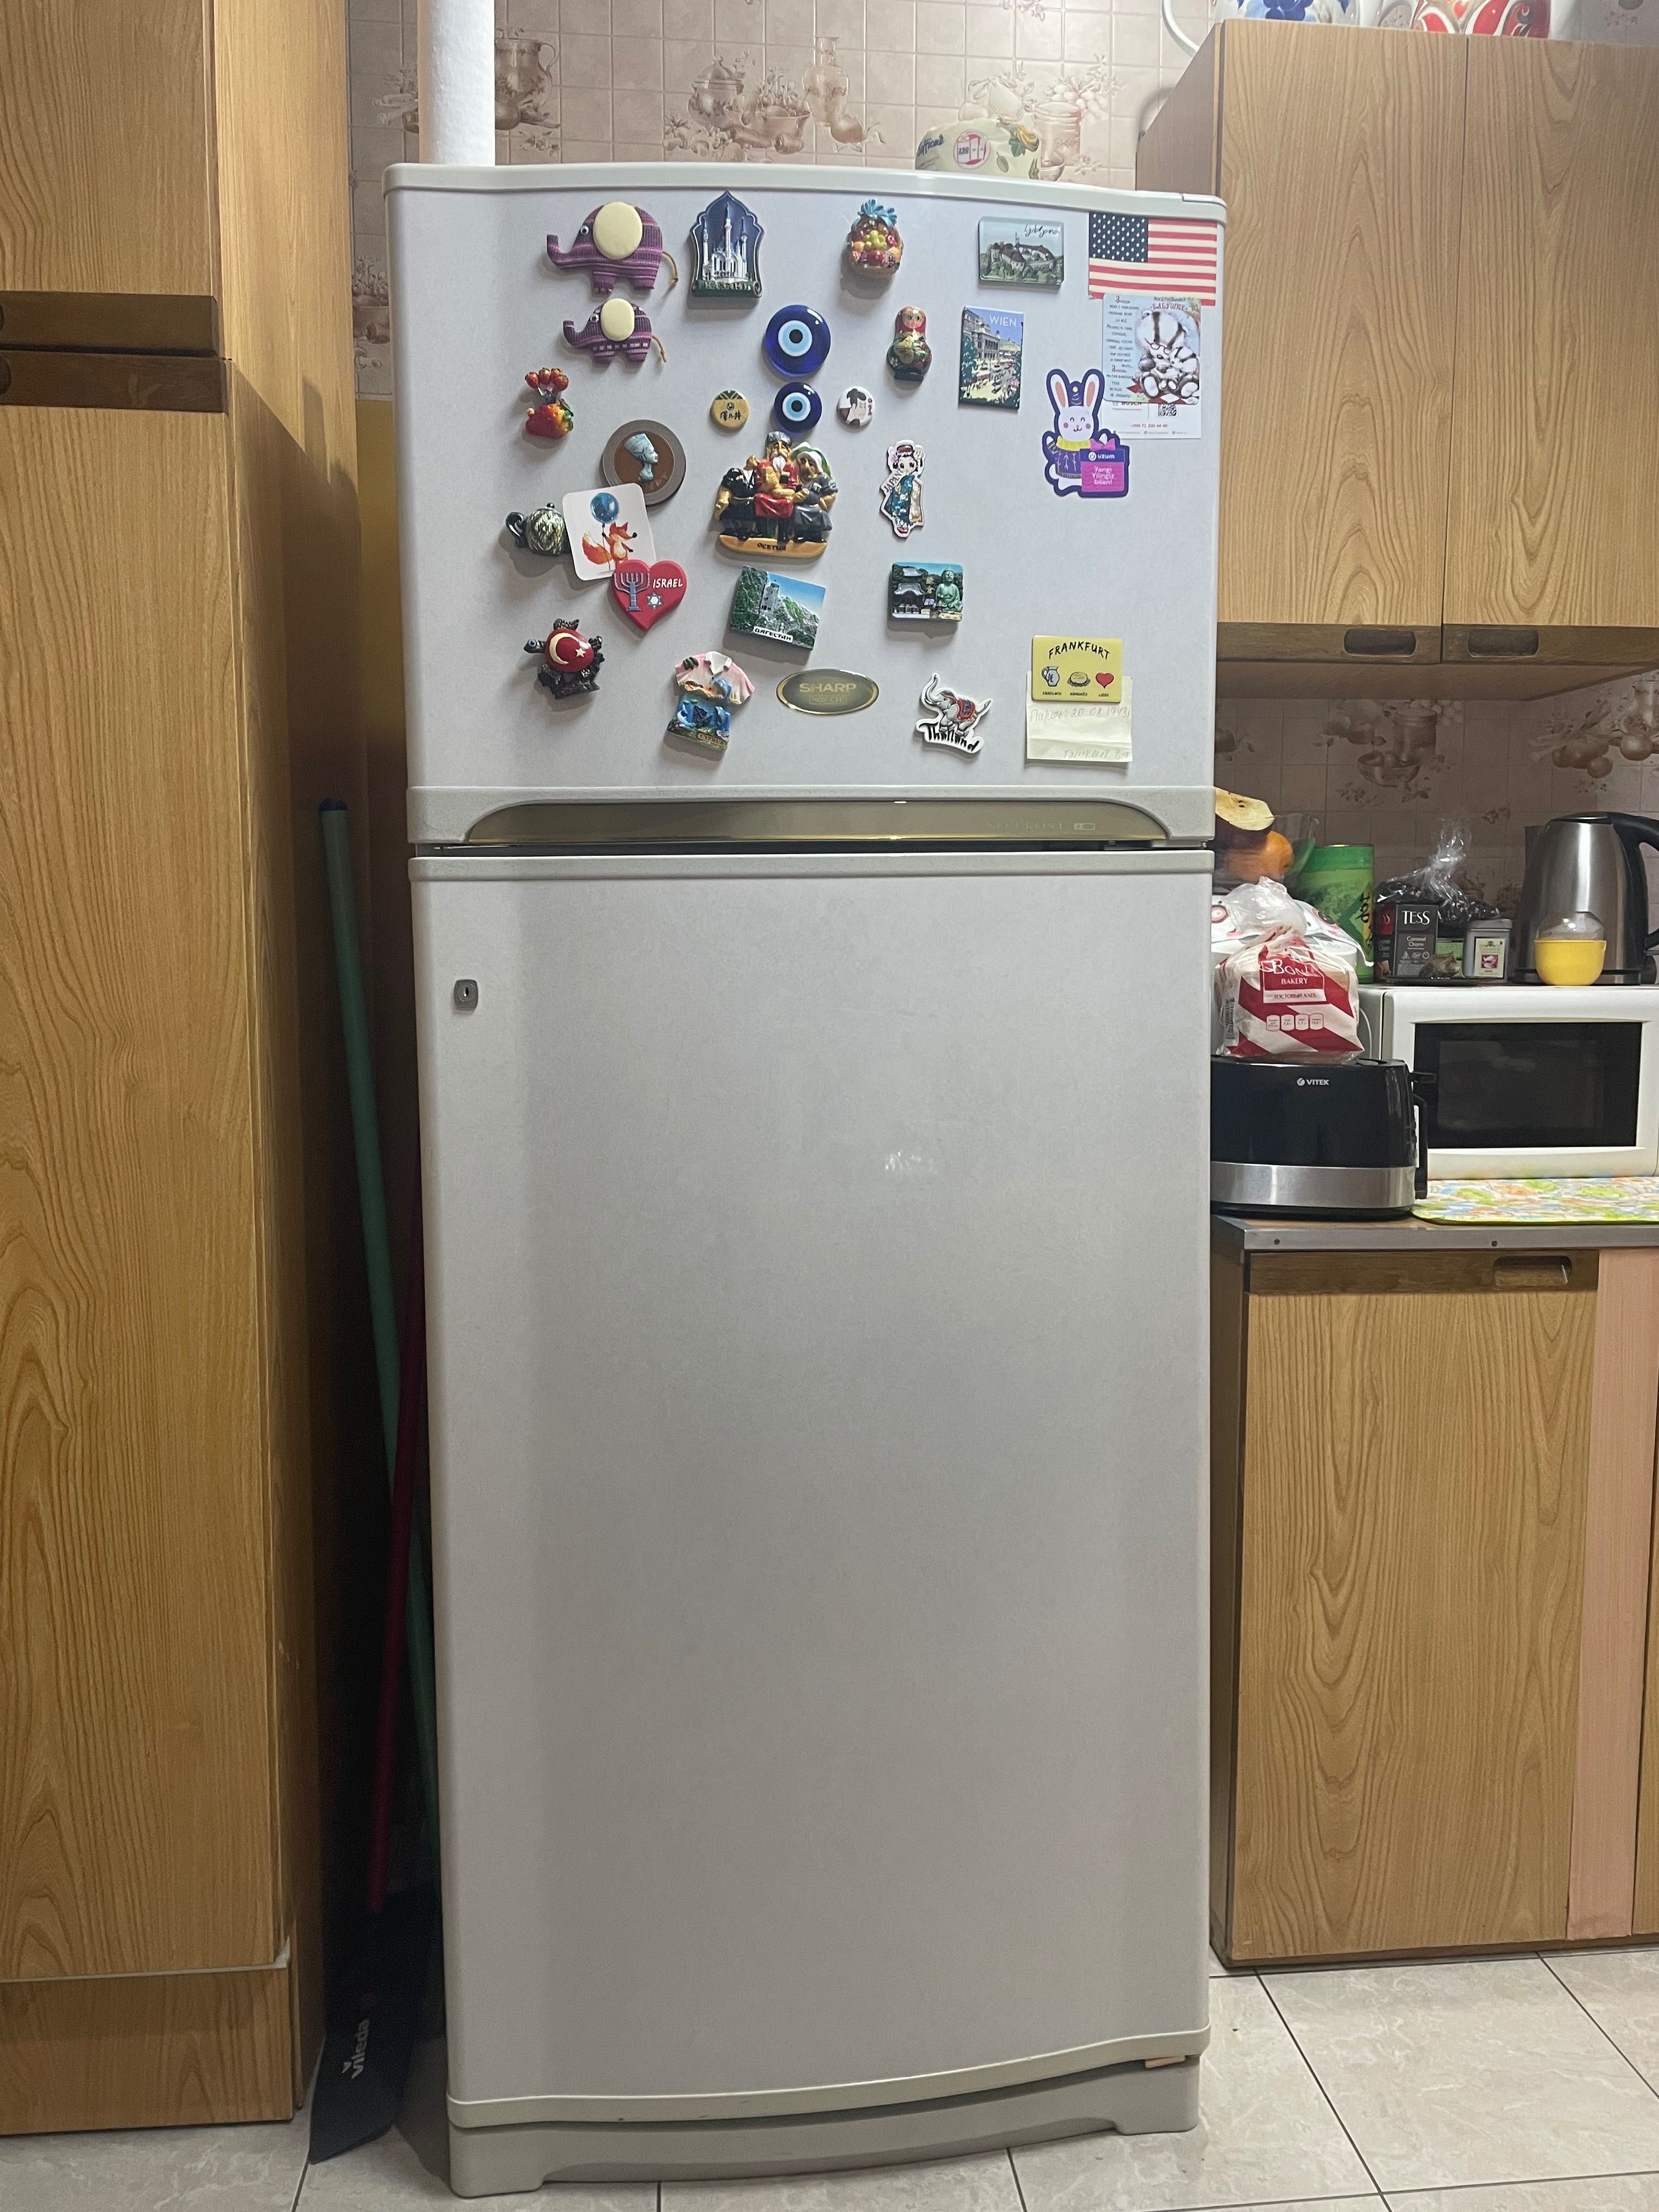 Холодильник Sharp